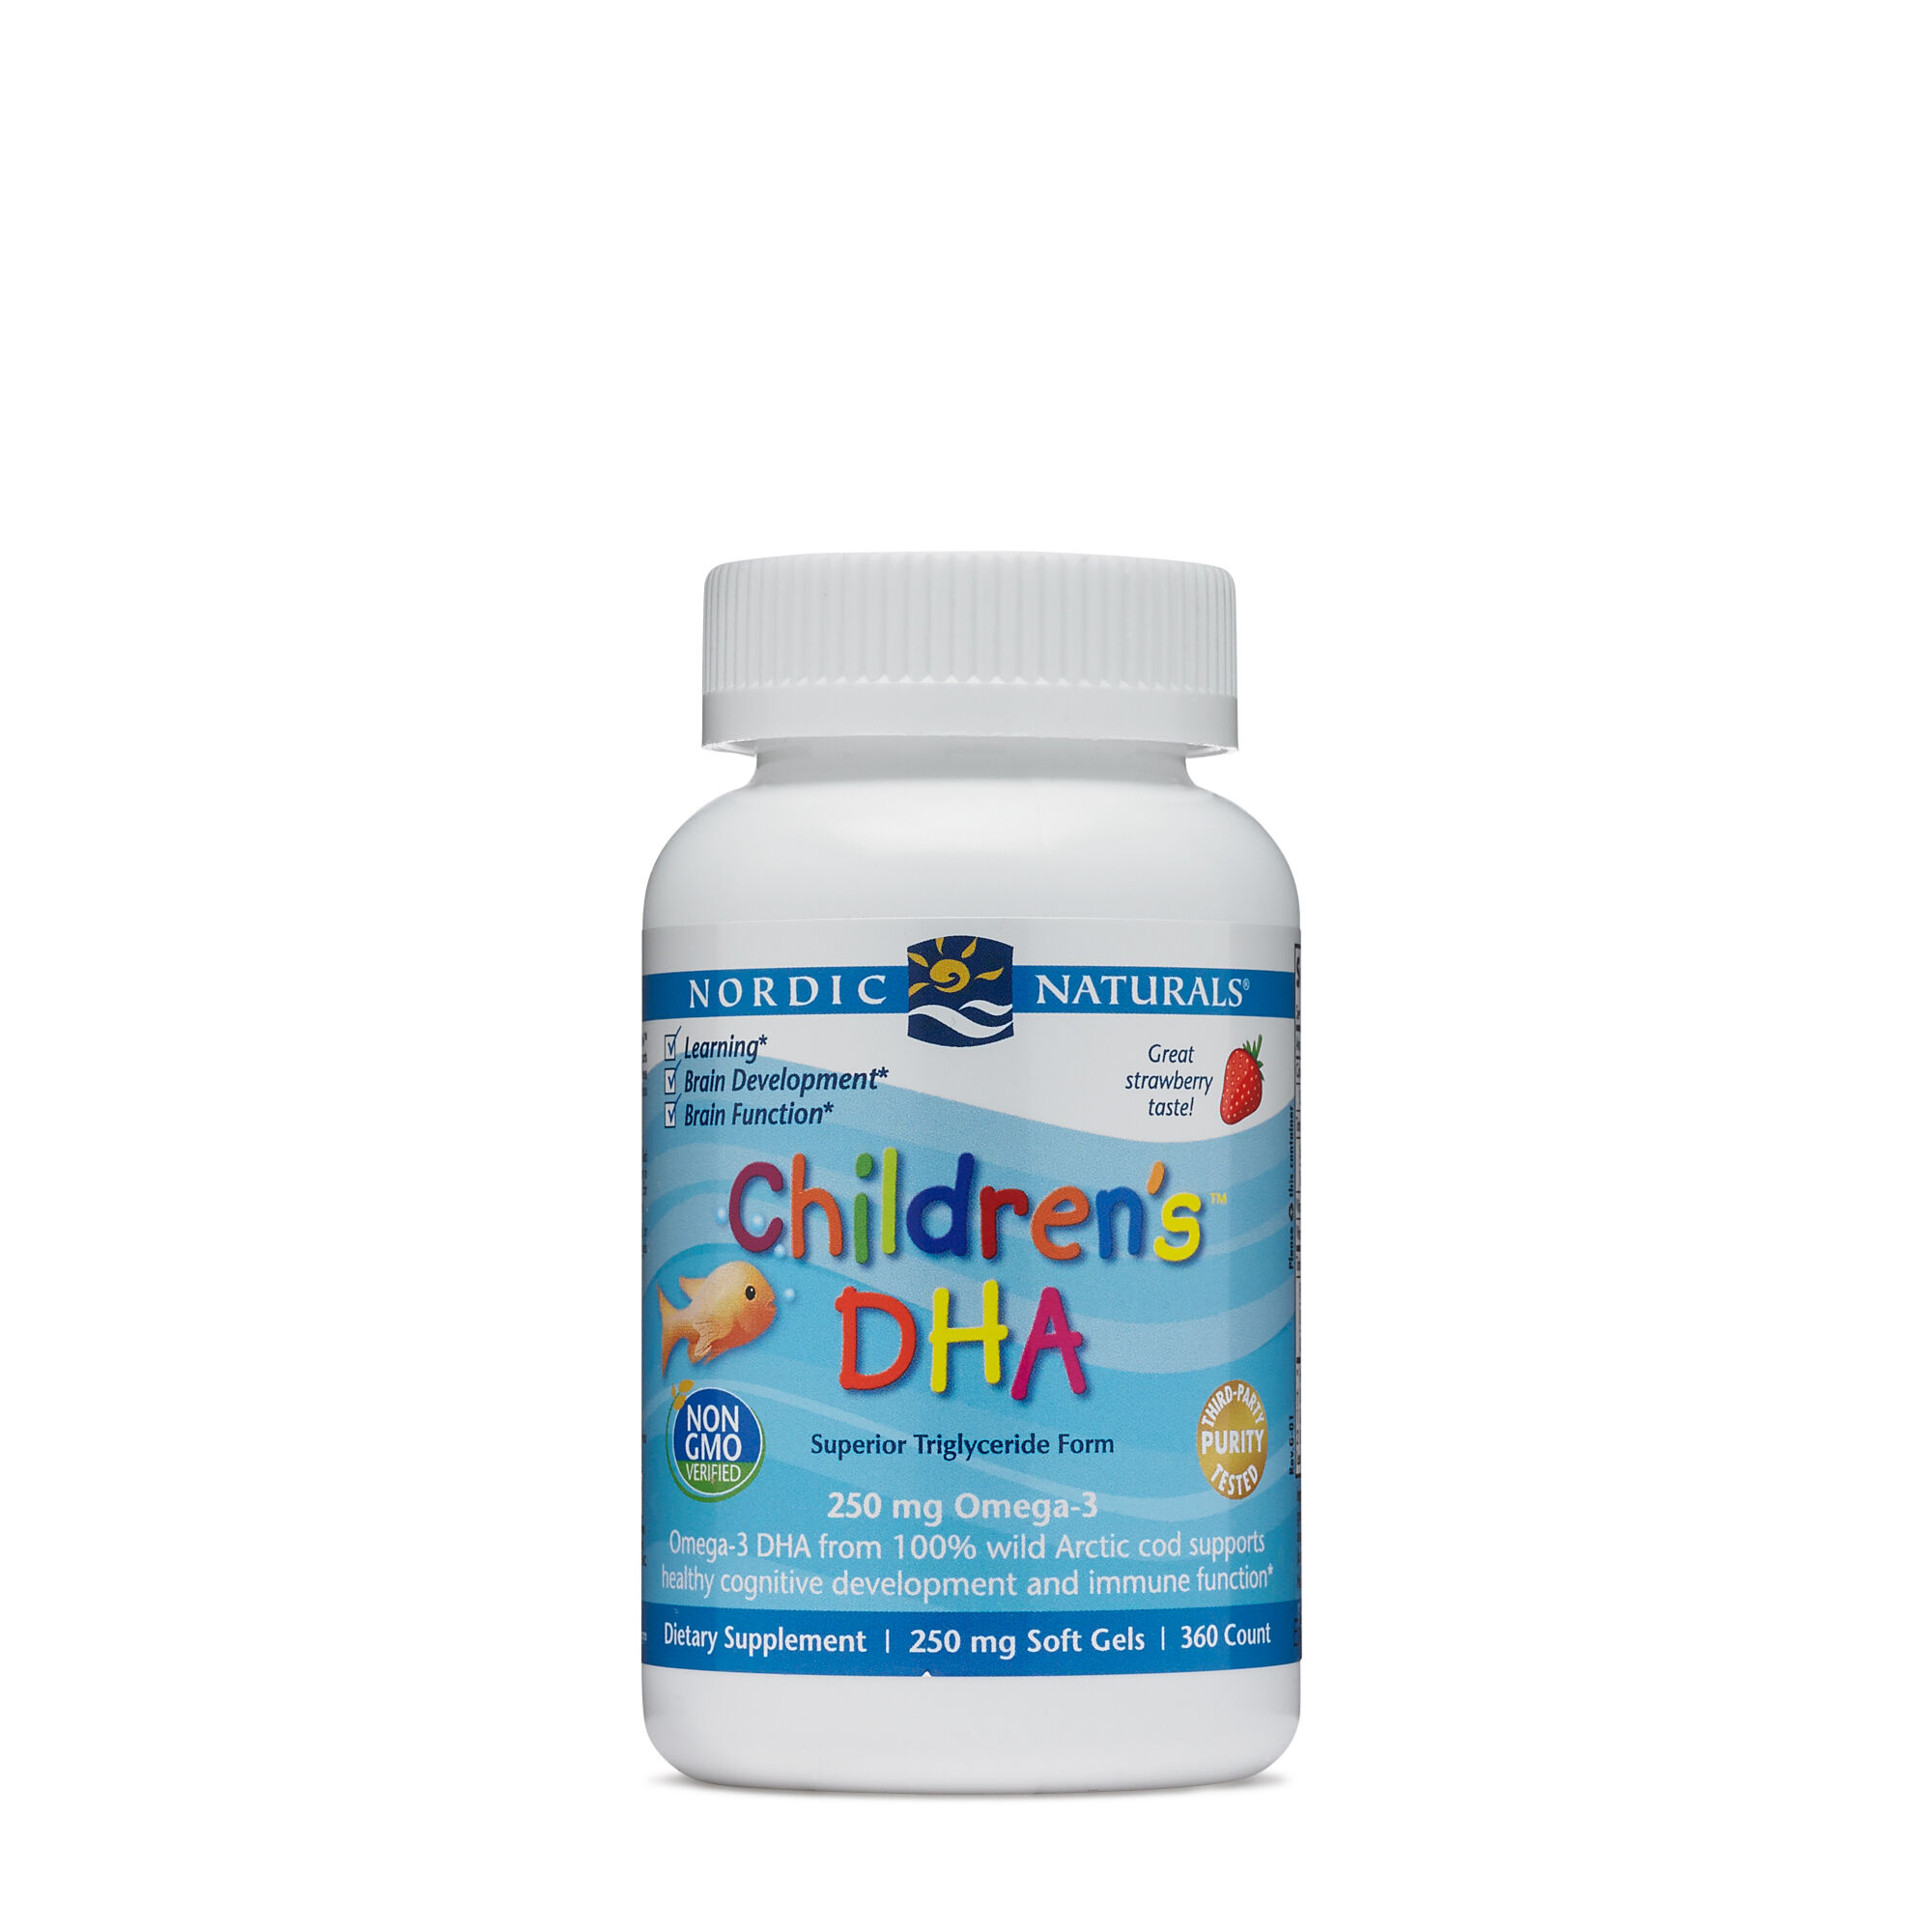 Nordic Naturals® Children's DHA- Natural Triglyceride Form | GNC